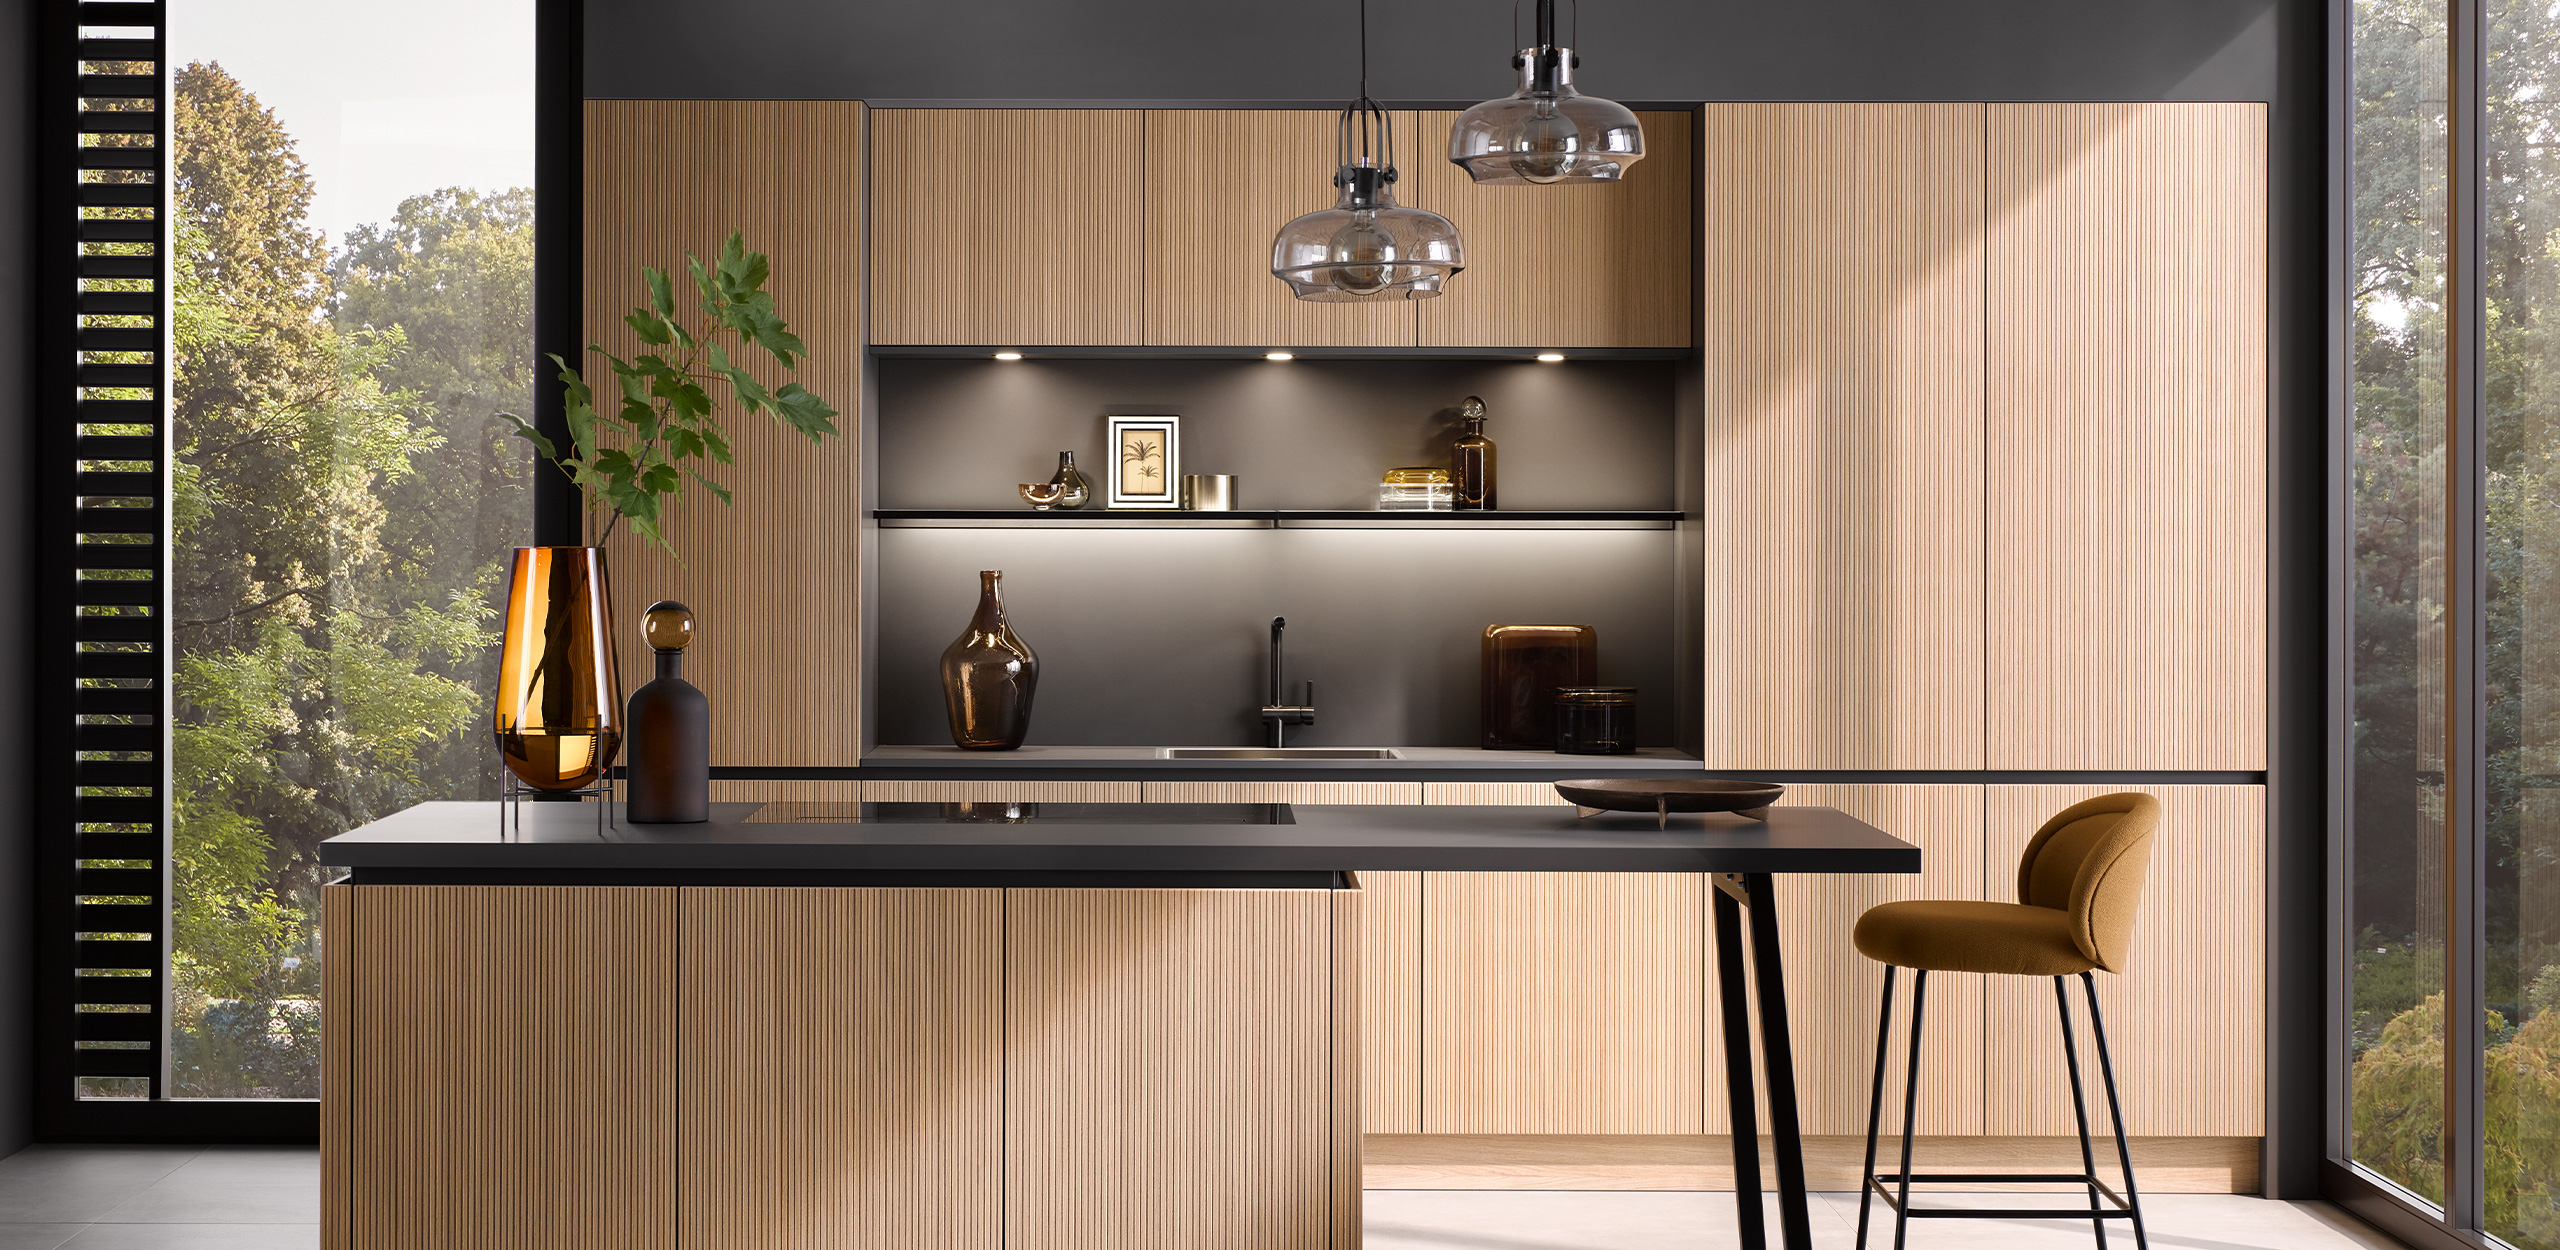 Moderne køkkener med moduler i mat sort og trælook